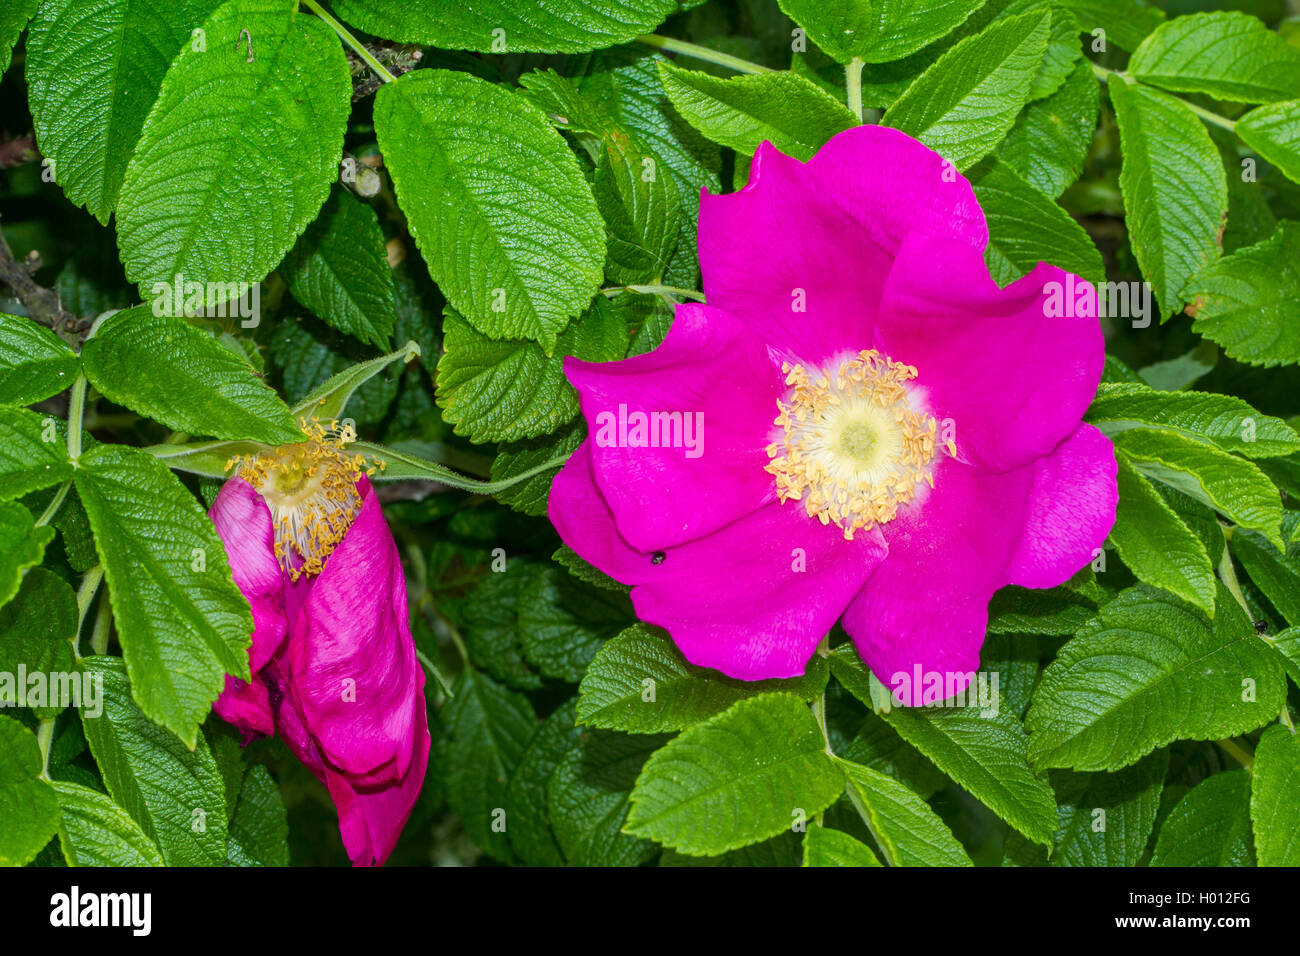 Rugosa rose, Japanese rose (Rosa rugosa), flowers, Germany, Mecklenburg-Western Pomerania Stock Photo